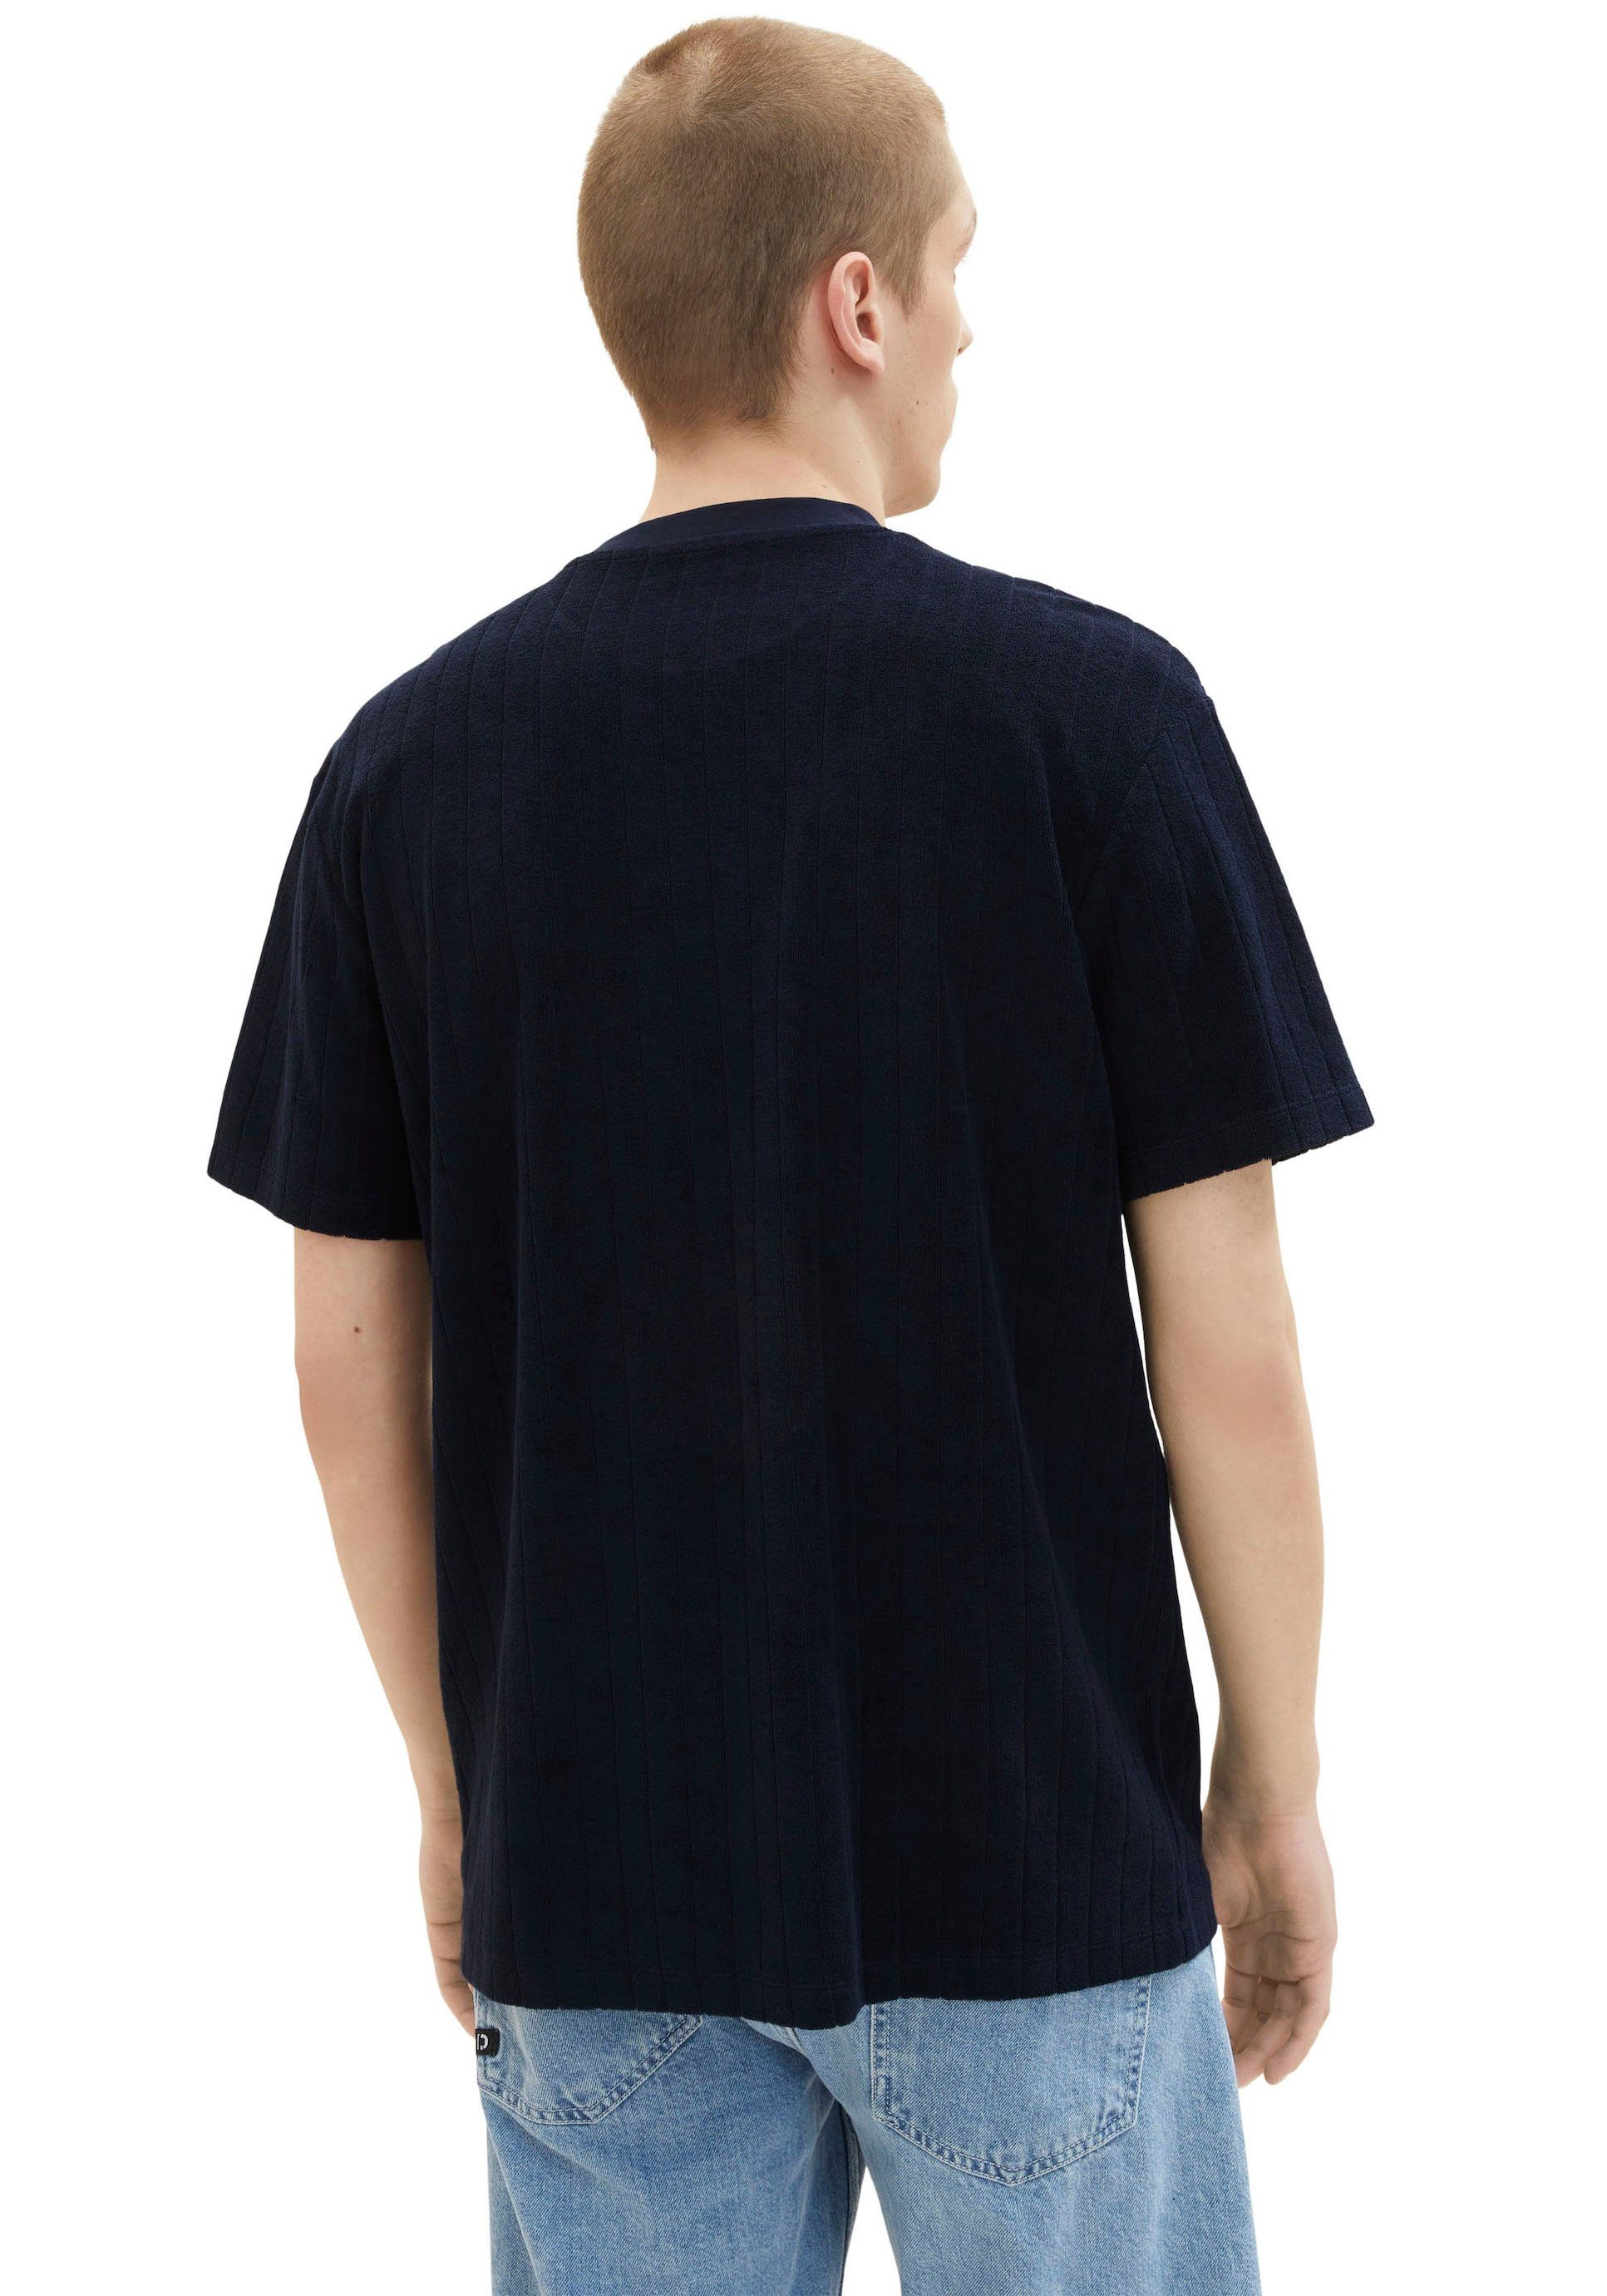 TOM TAILOR Denim strukturierter aus gemustert T-Shirt Sweatware navy